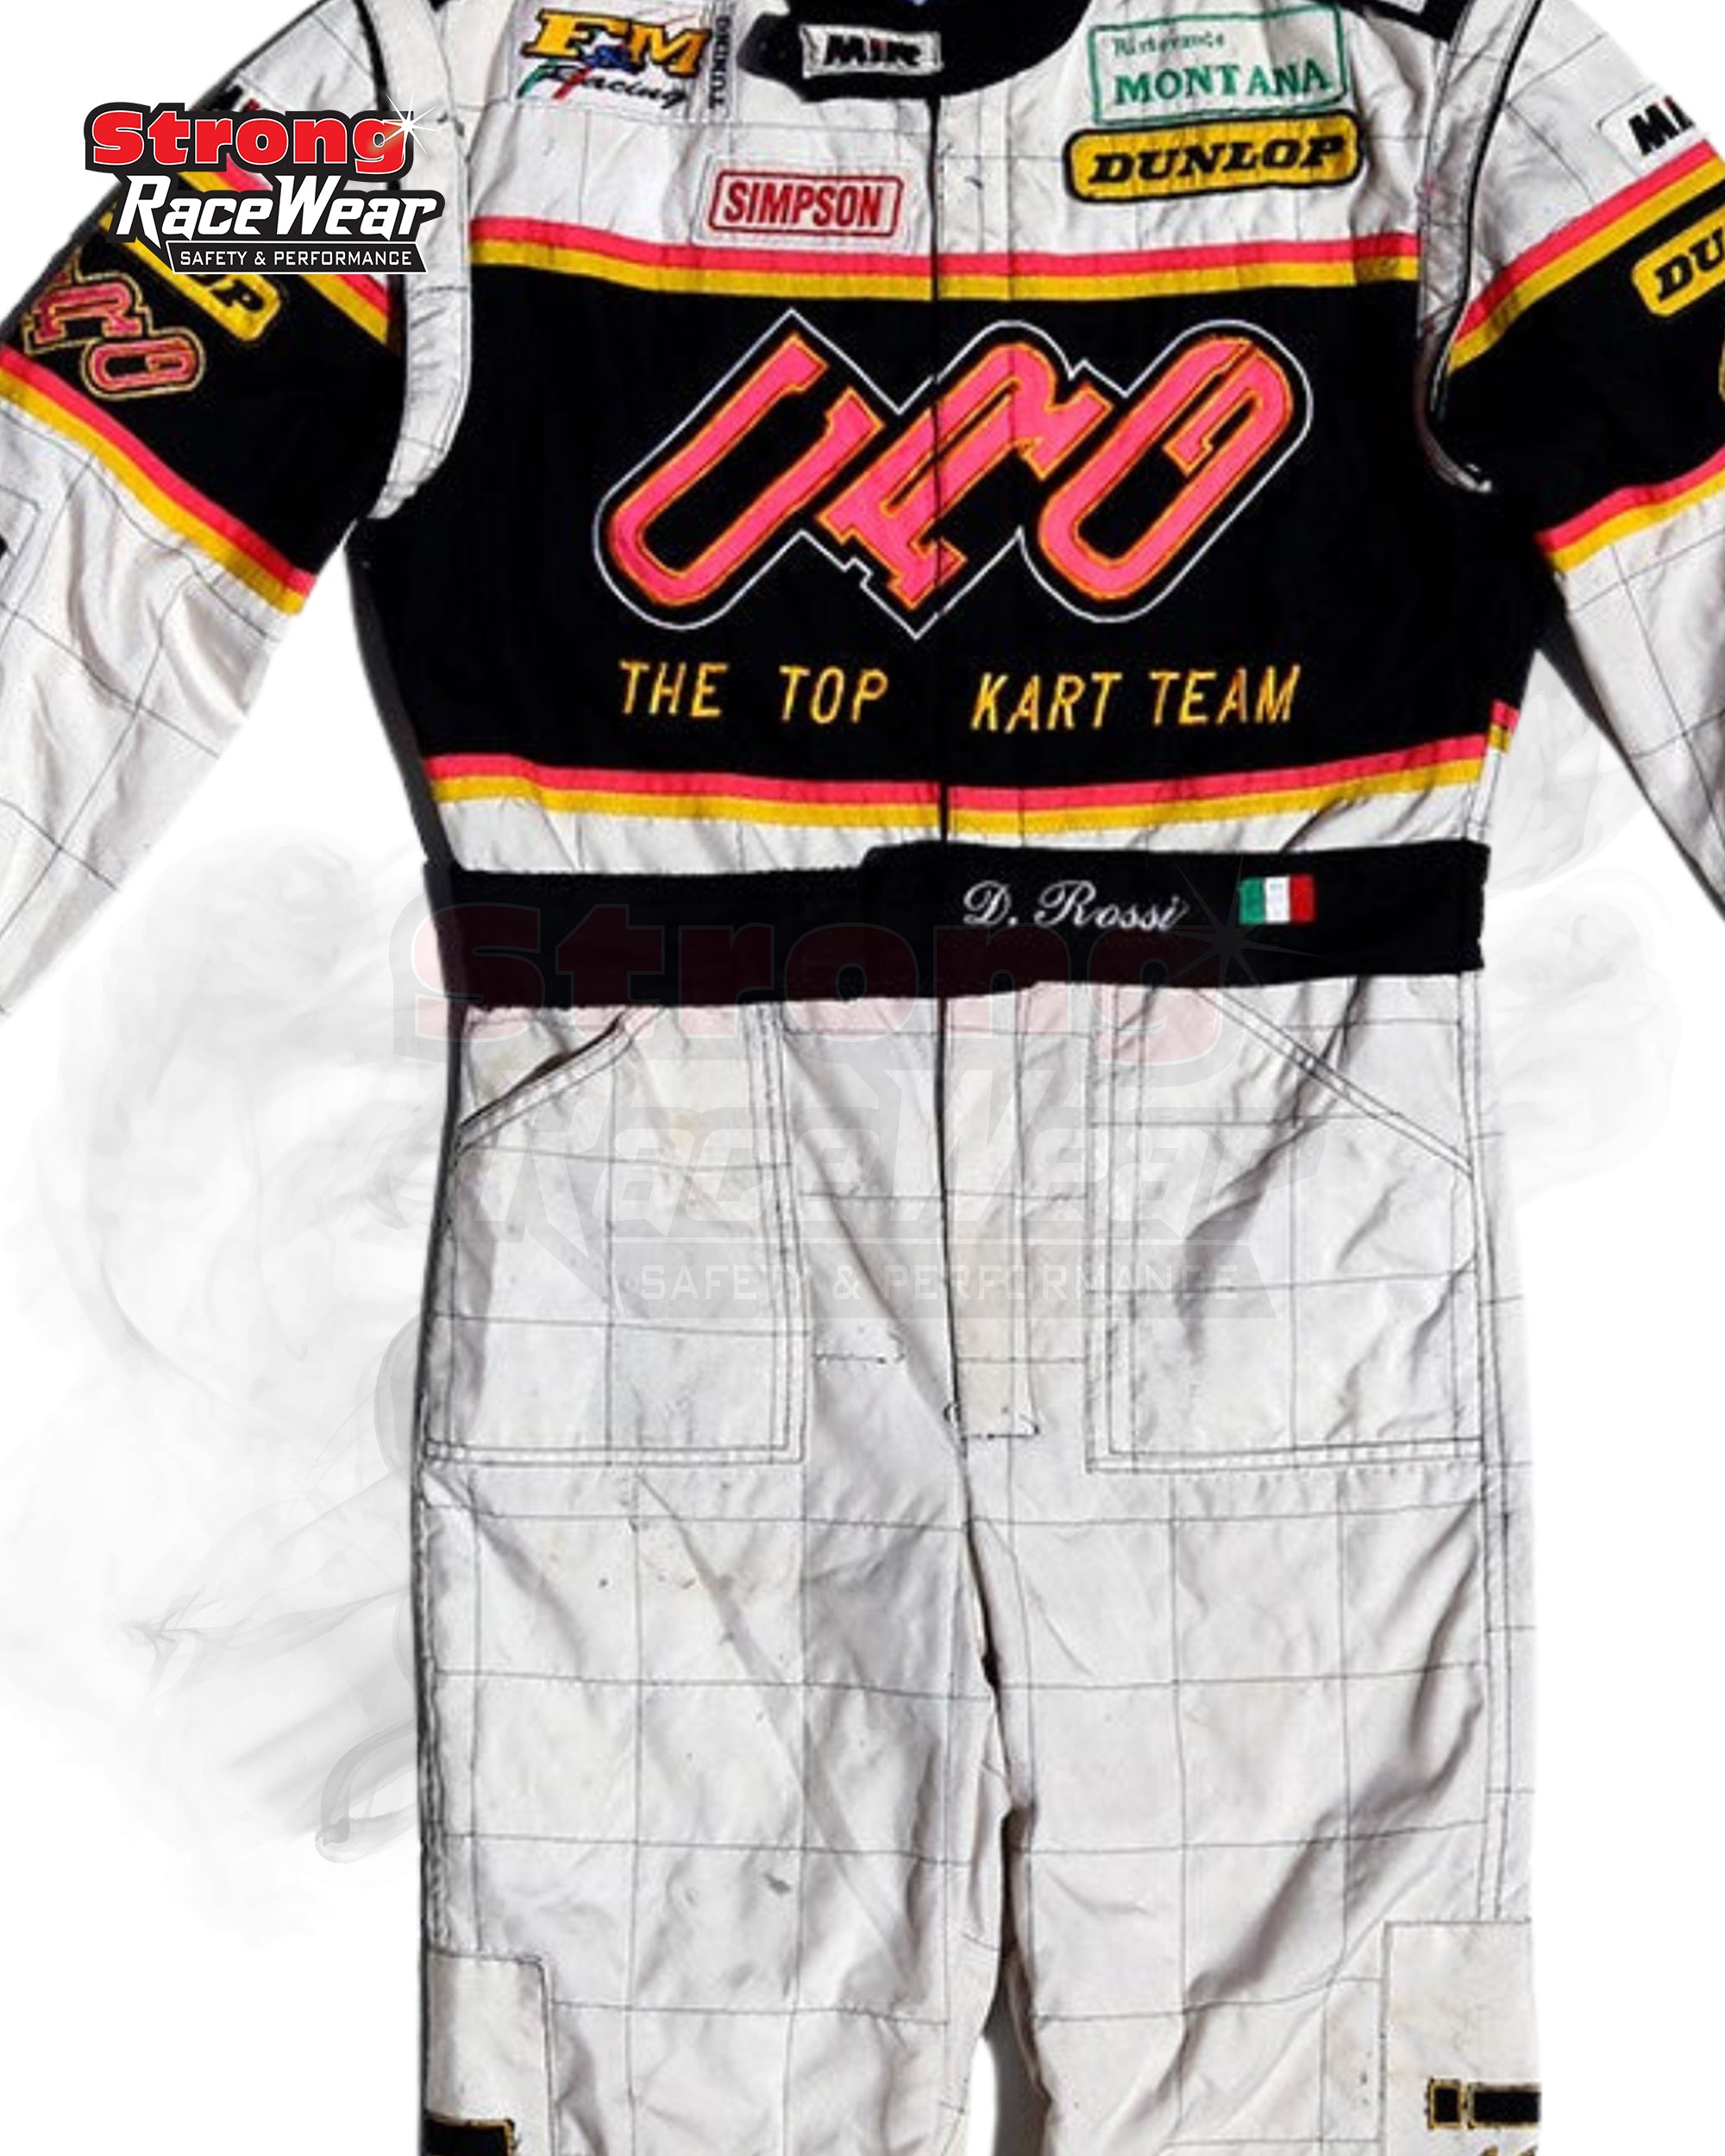 1997 Danilo Rossi CRG Racing Suit